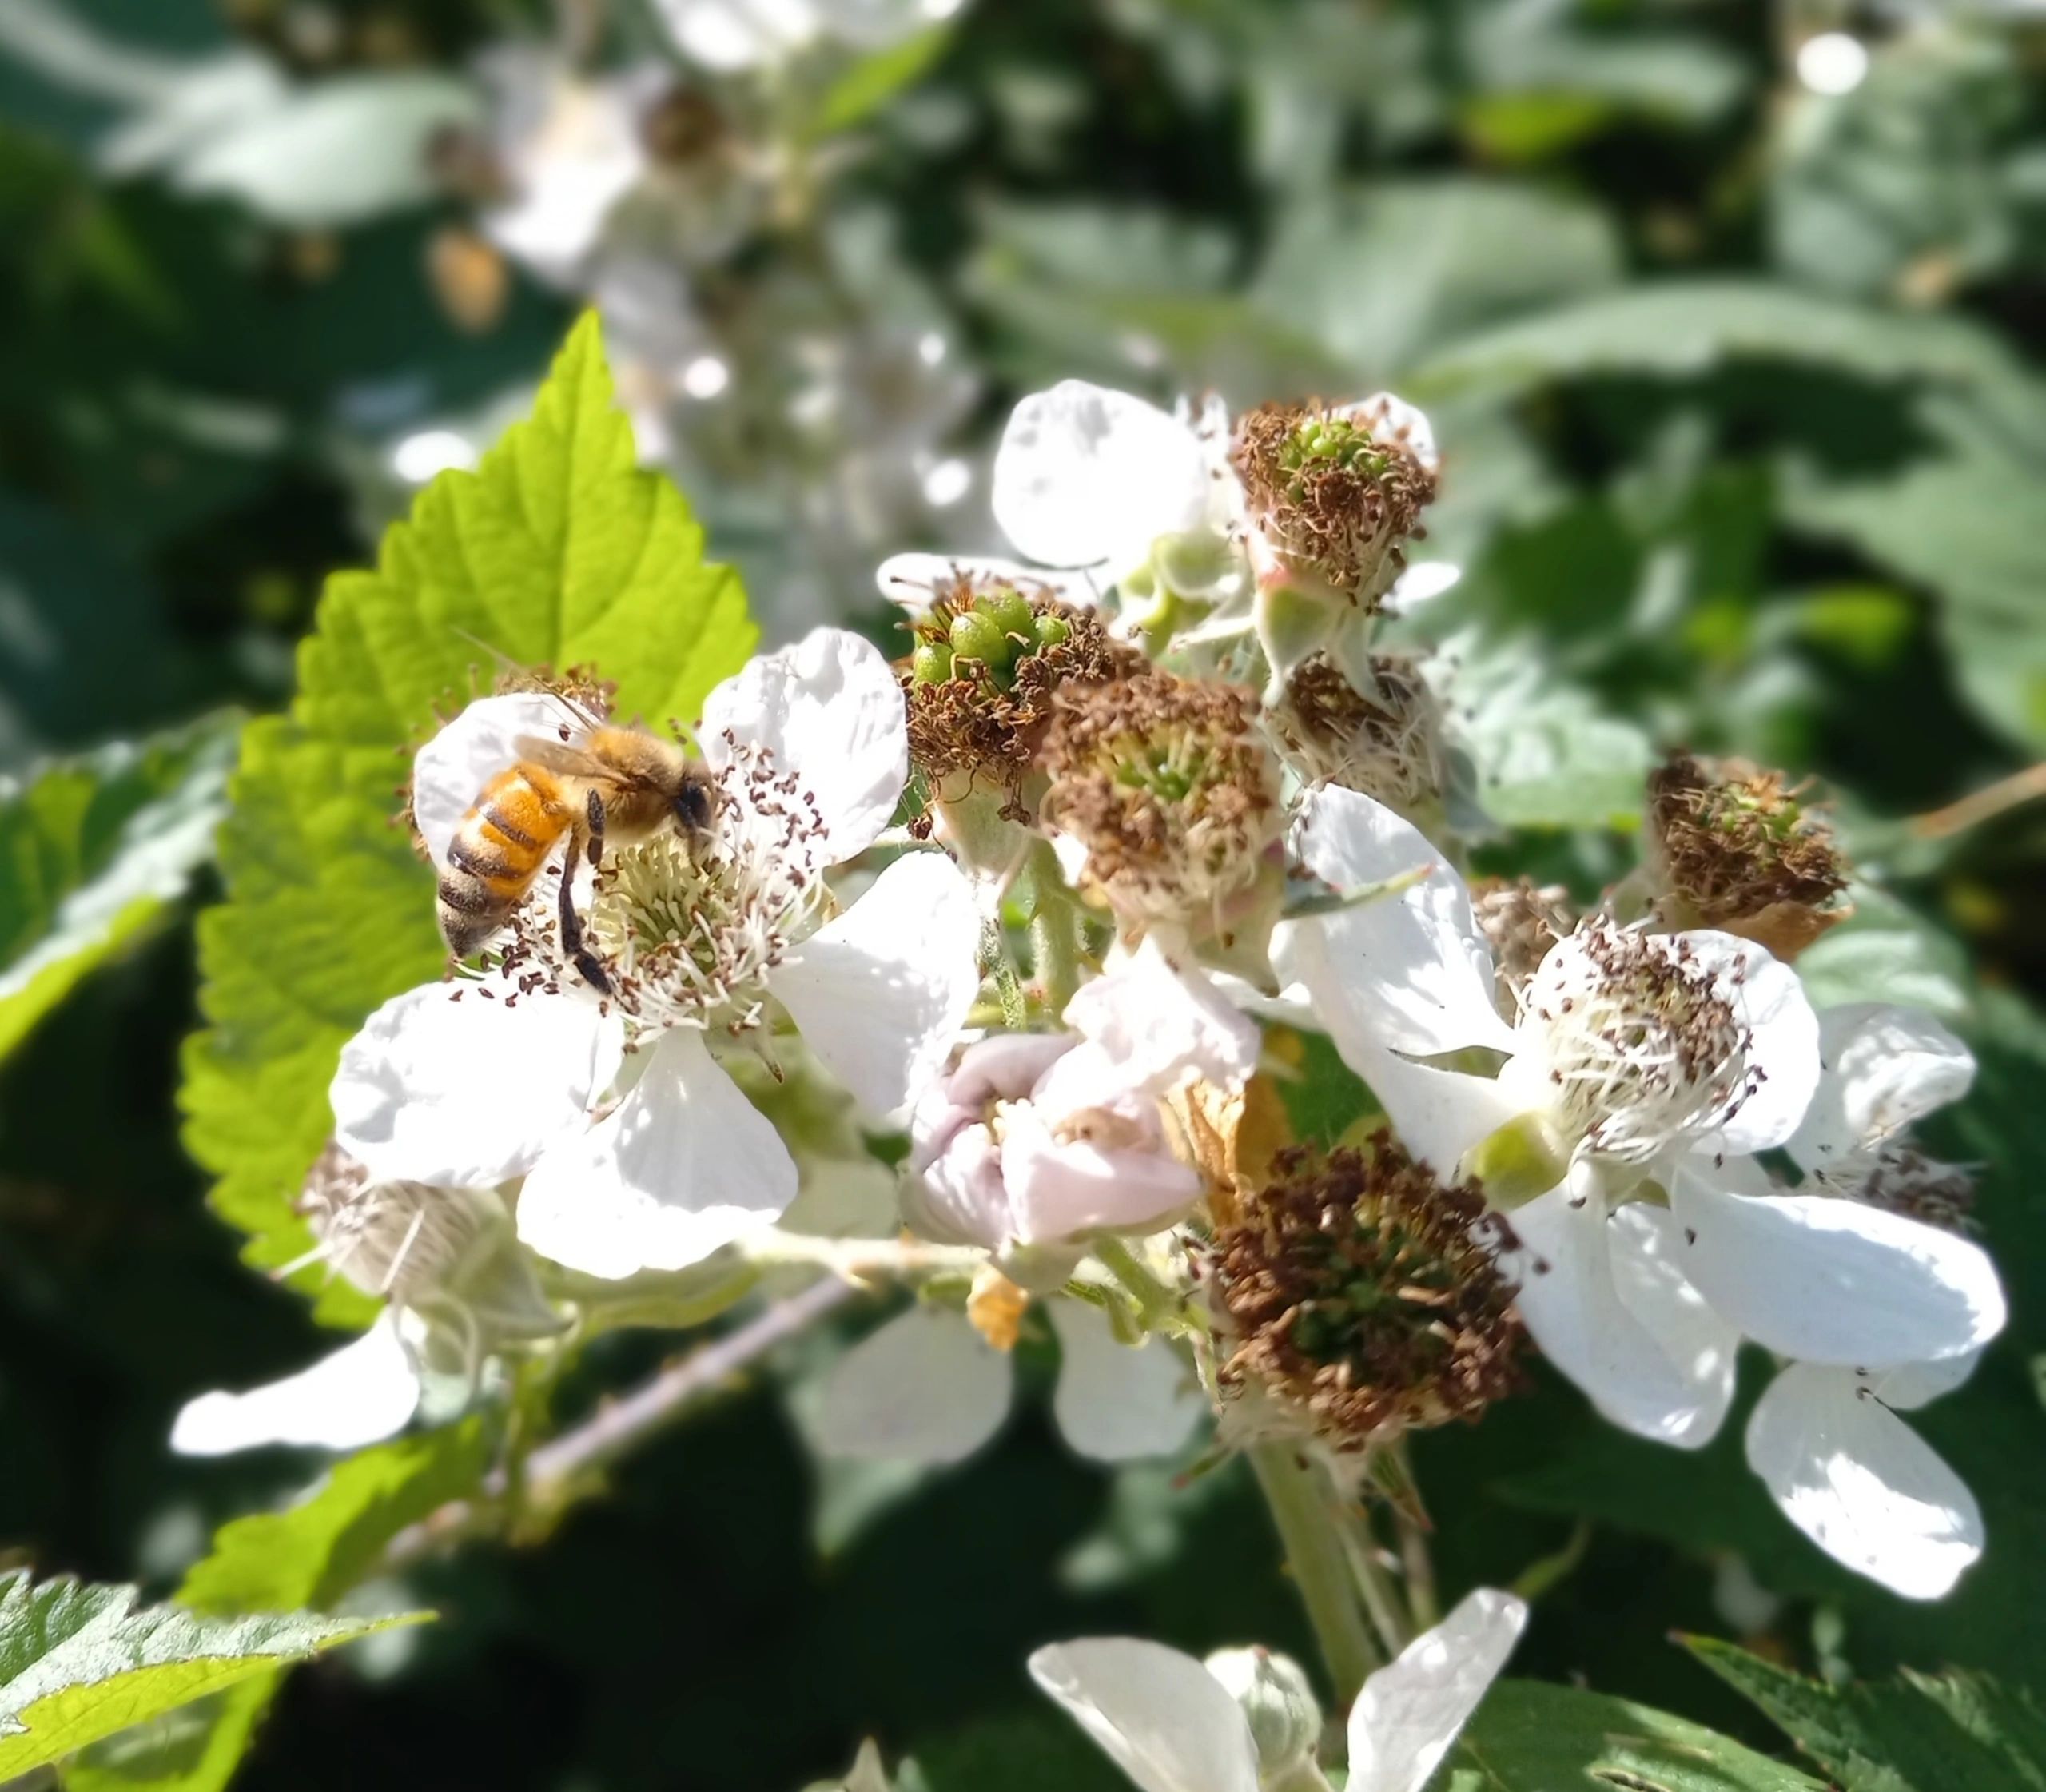 Honeybee on blackberry blossom